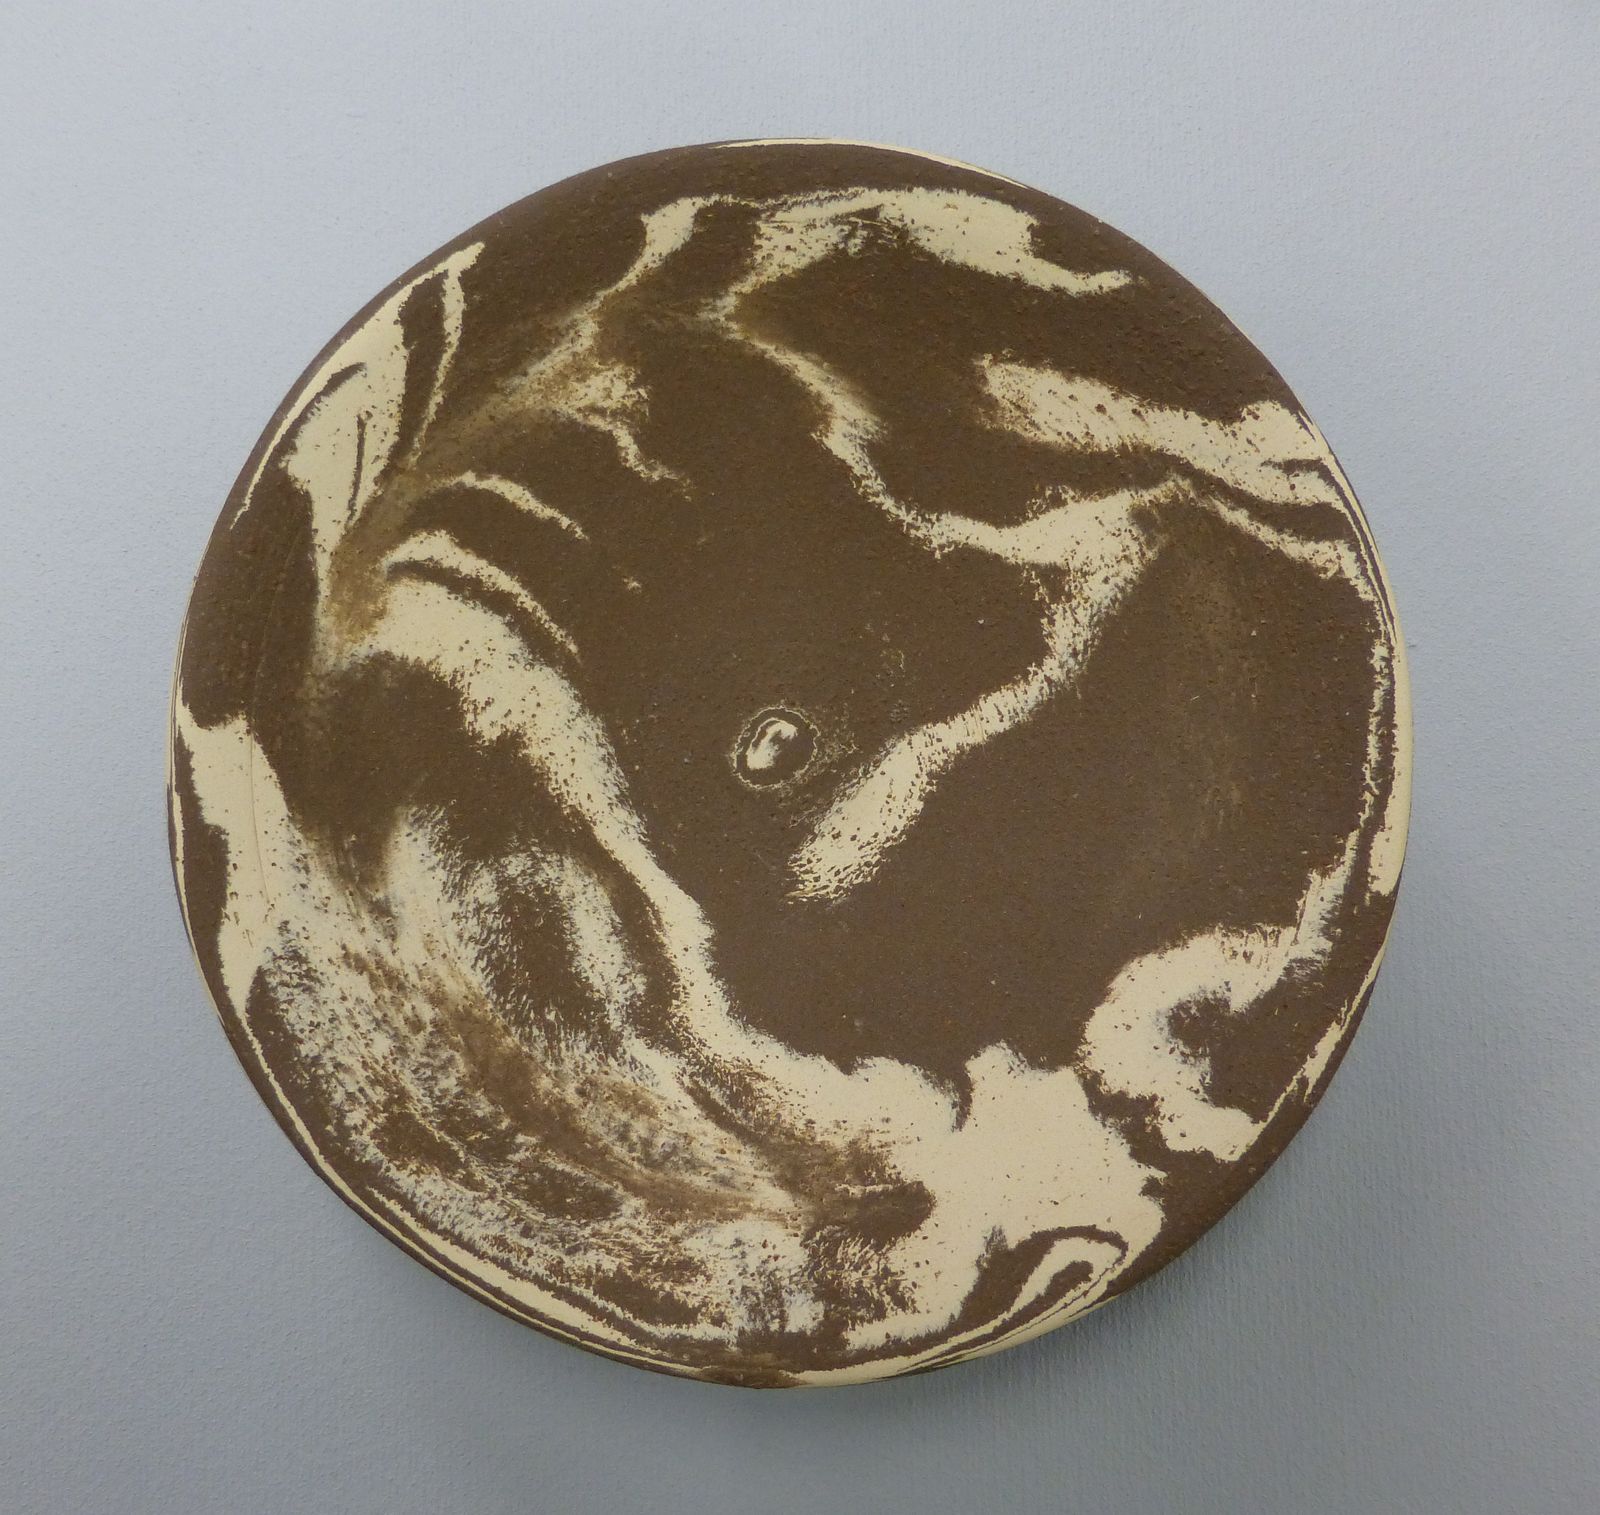 mittlere Keramikschale rund (Neriage)